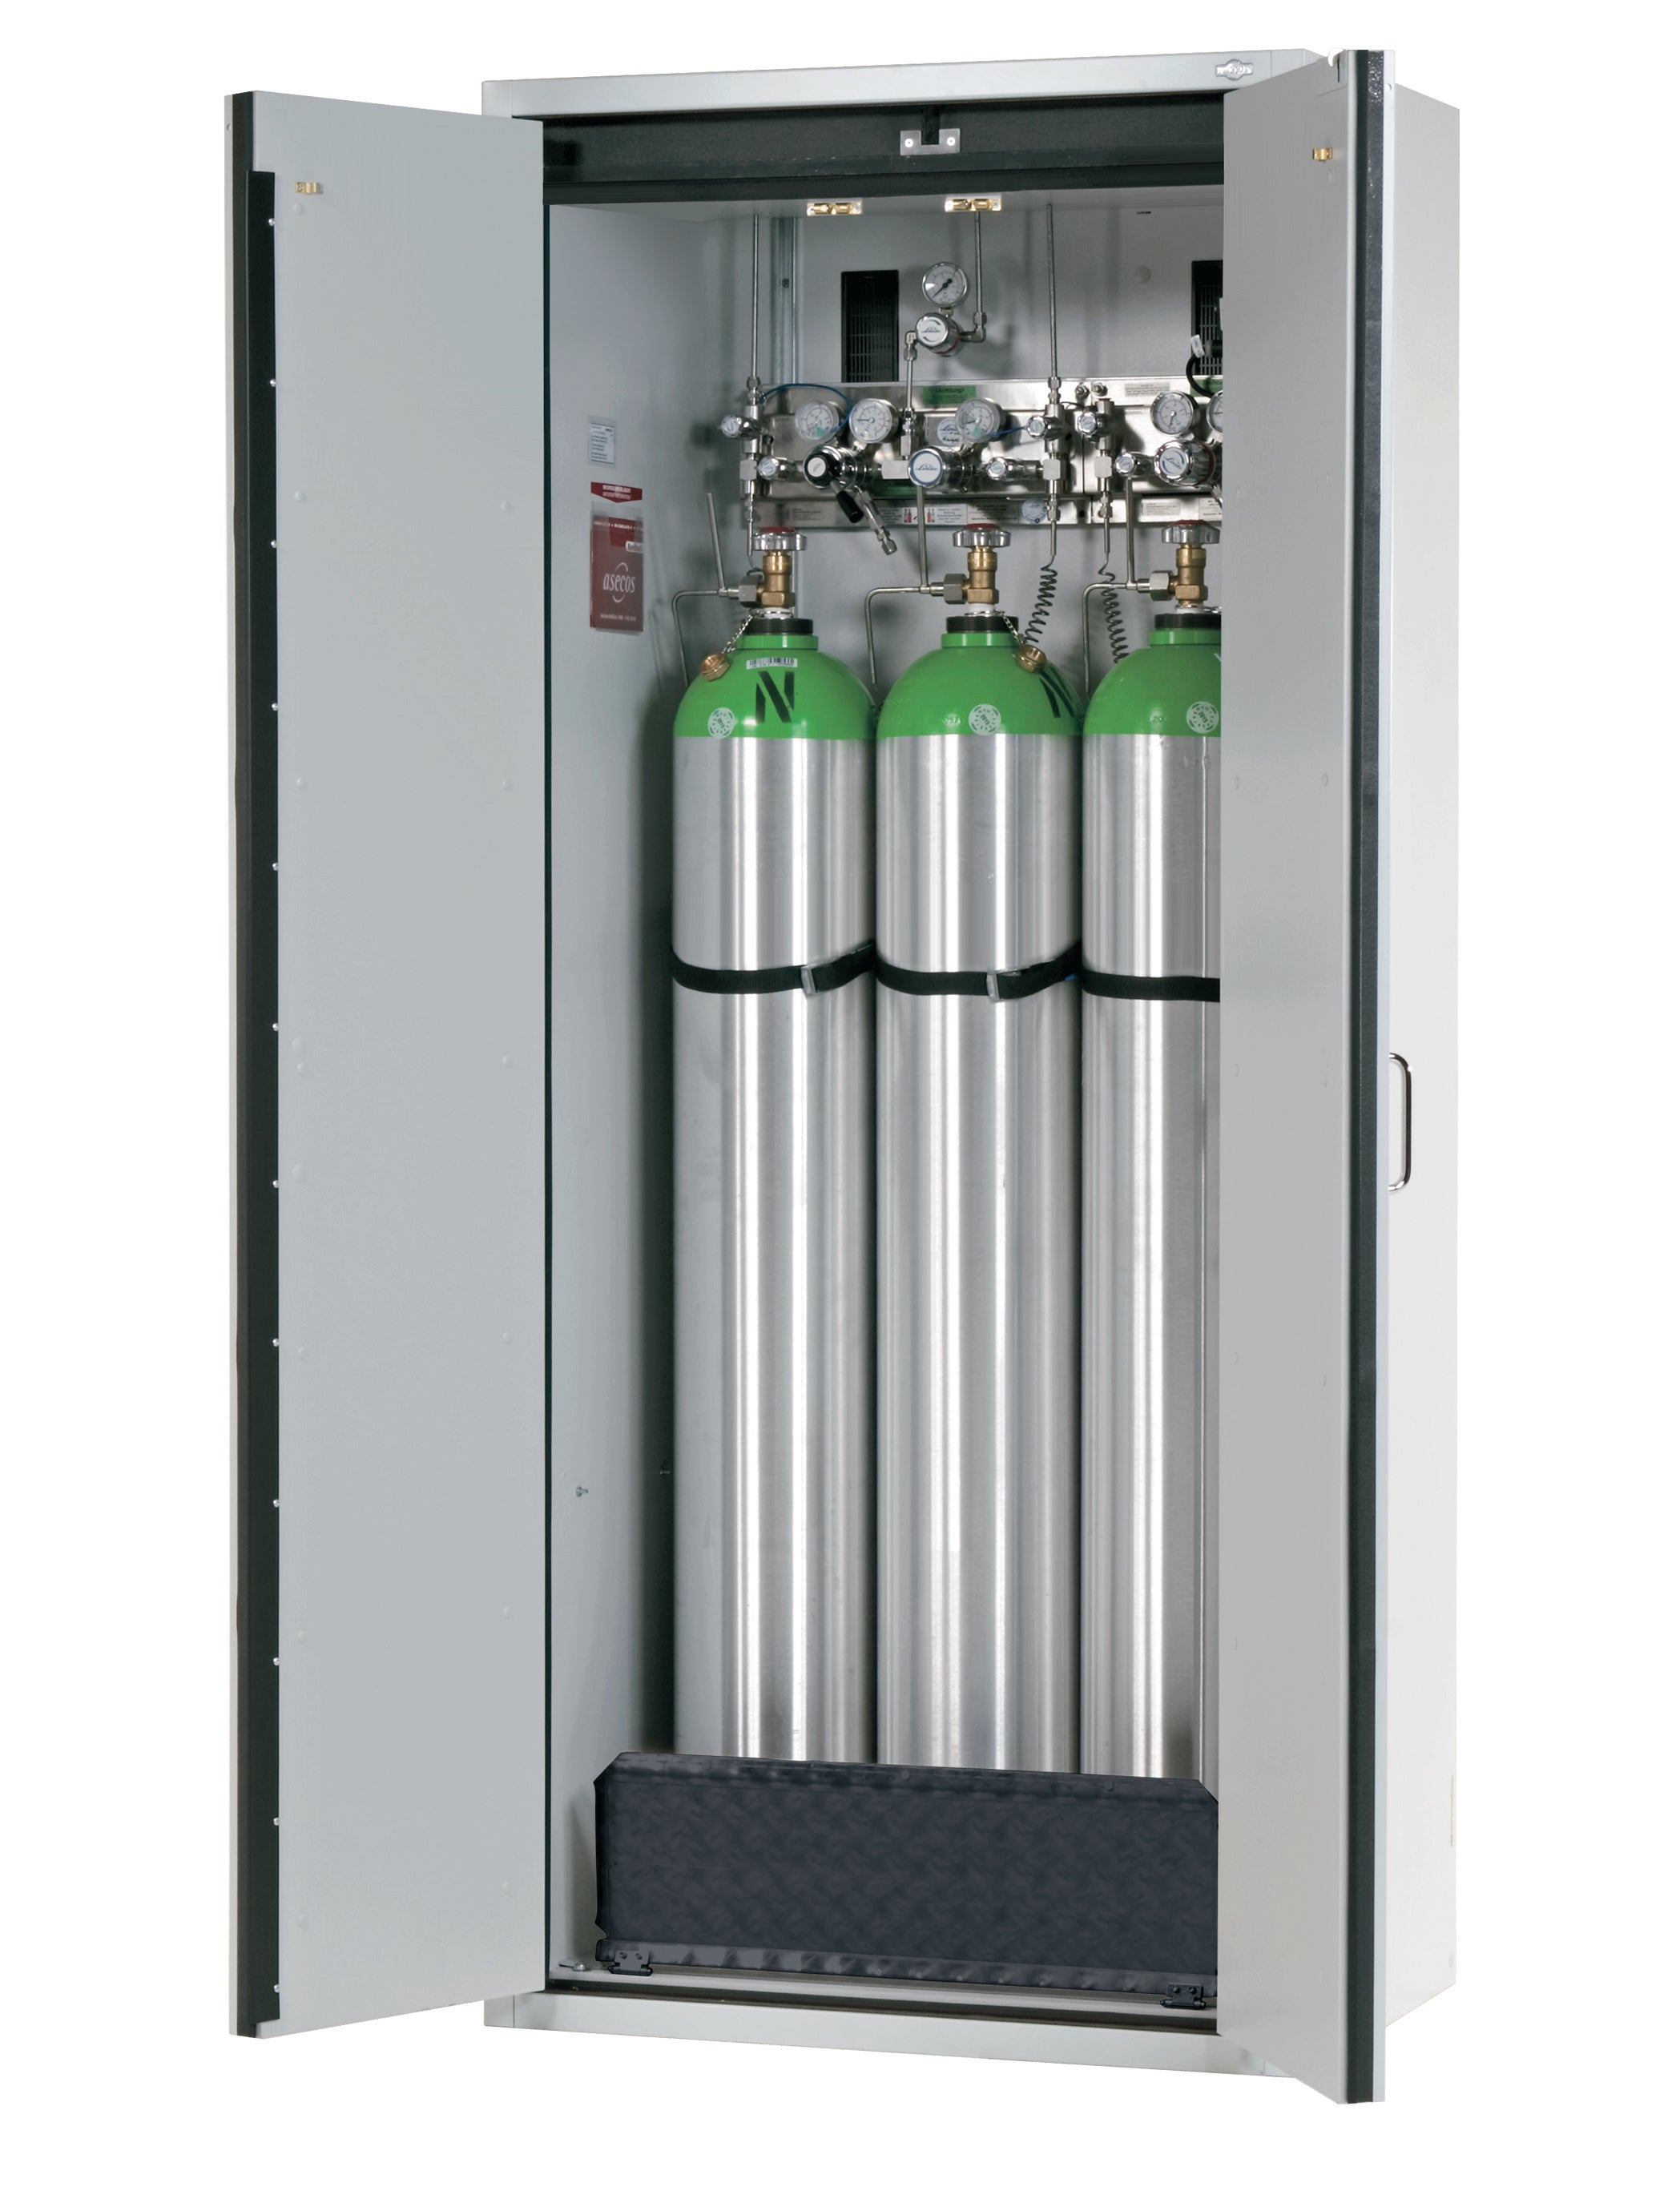 Typ 30 Druckgasflaschenschrank G-CLASSIC-30 Modell G30.205.090 in lichtgrau RAL 7035 mit Standardinneneinrichtung für 3x Druckgasflaschen à  50 Liter